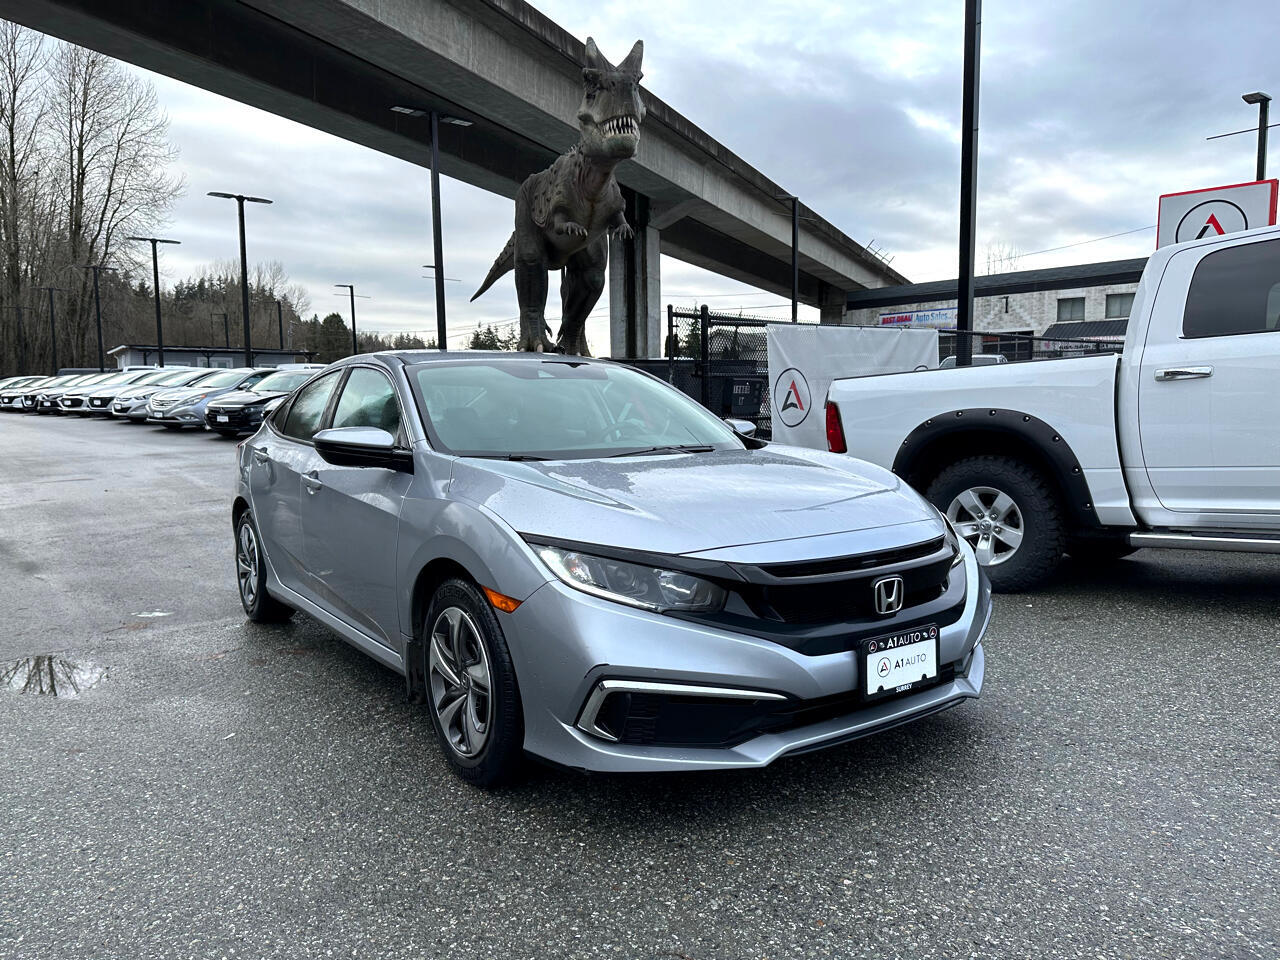 2019 Honda Civic LX - Heated Seats, Touch Media, Back Up Camera